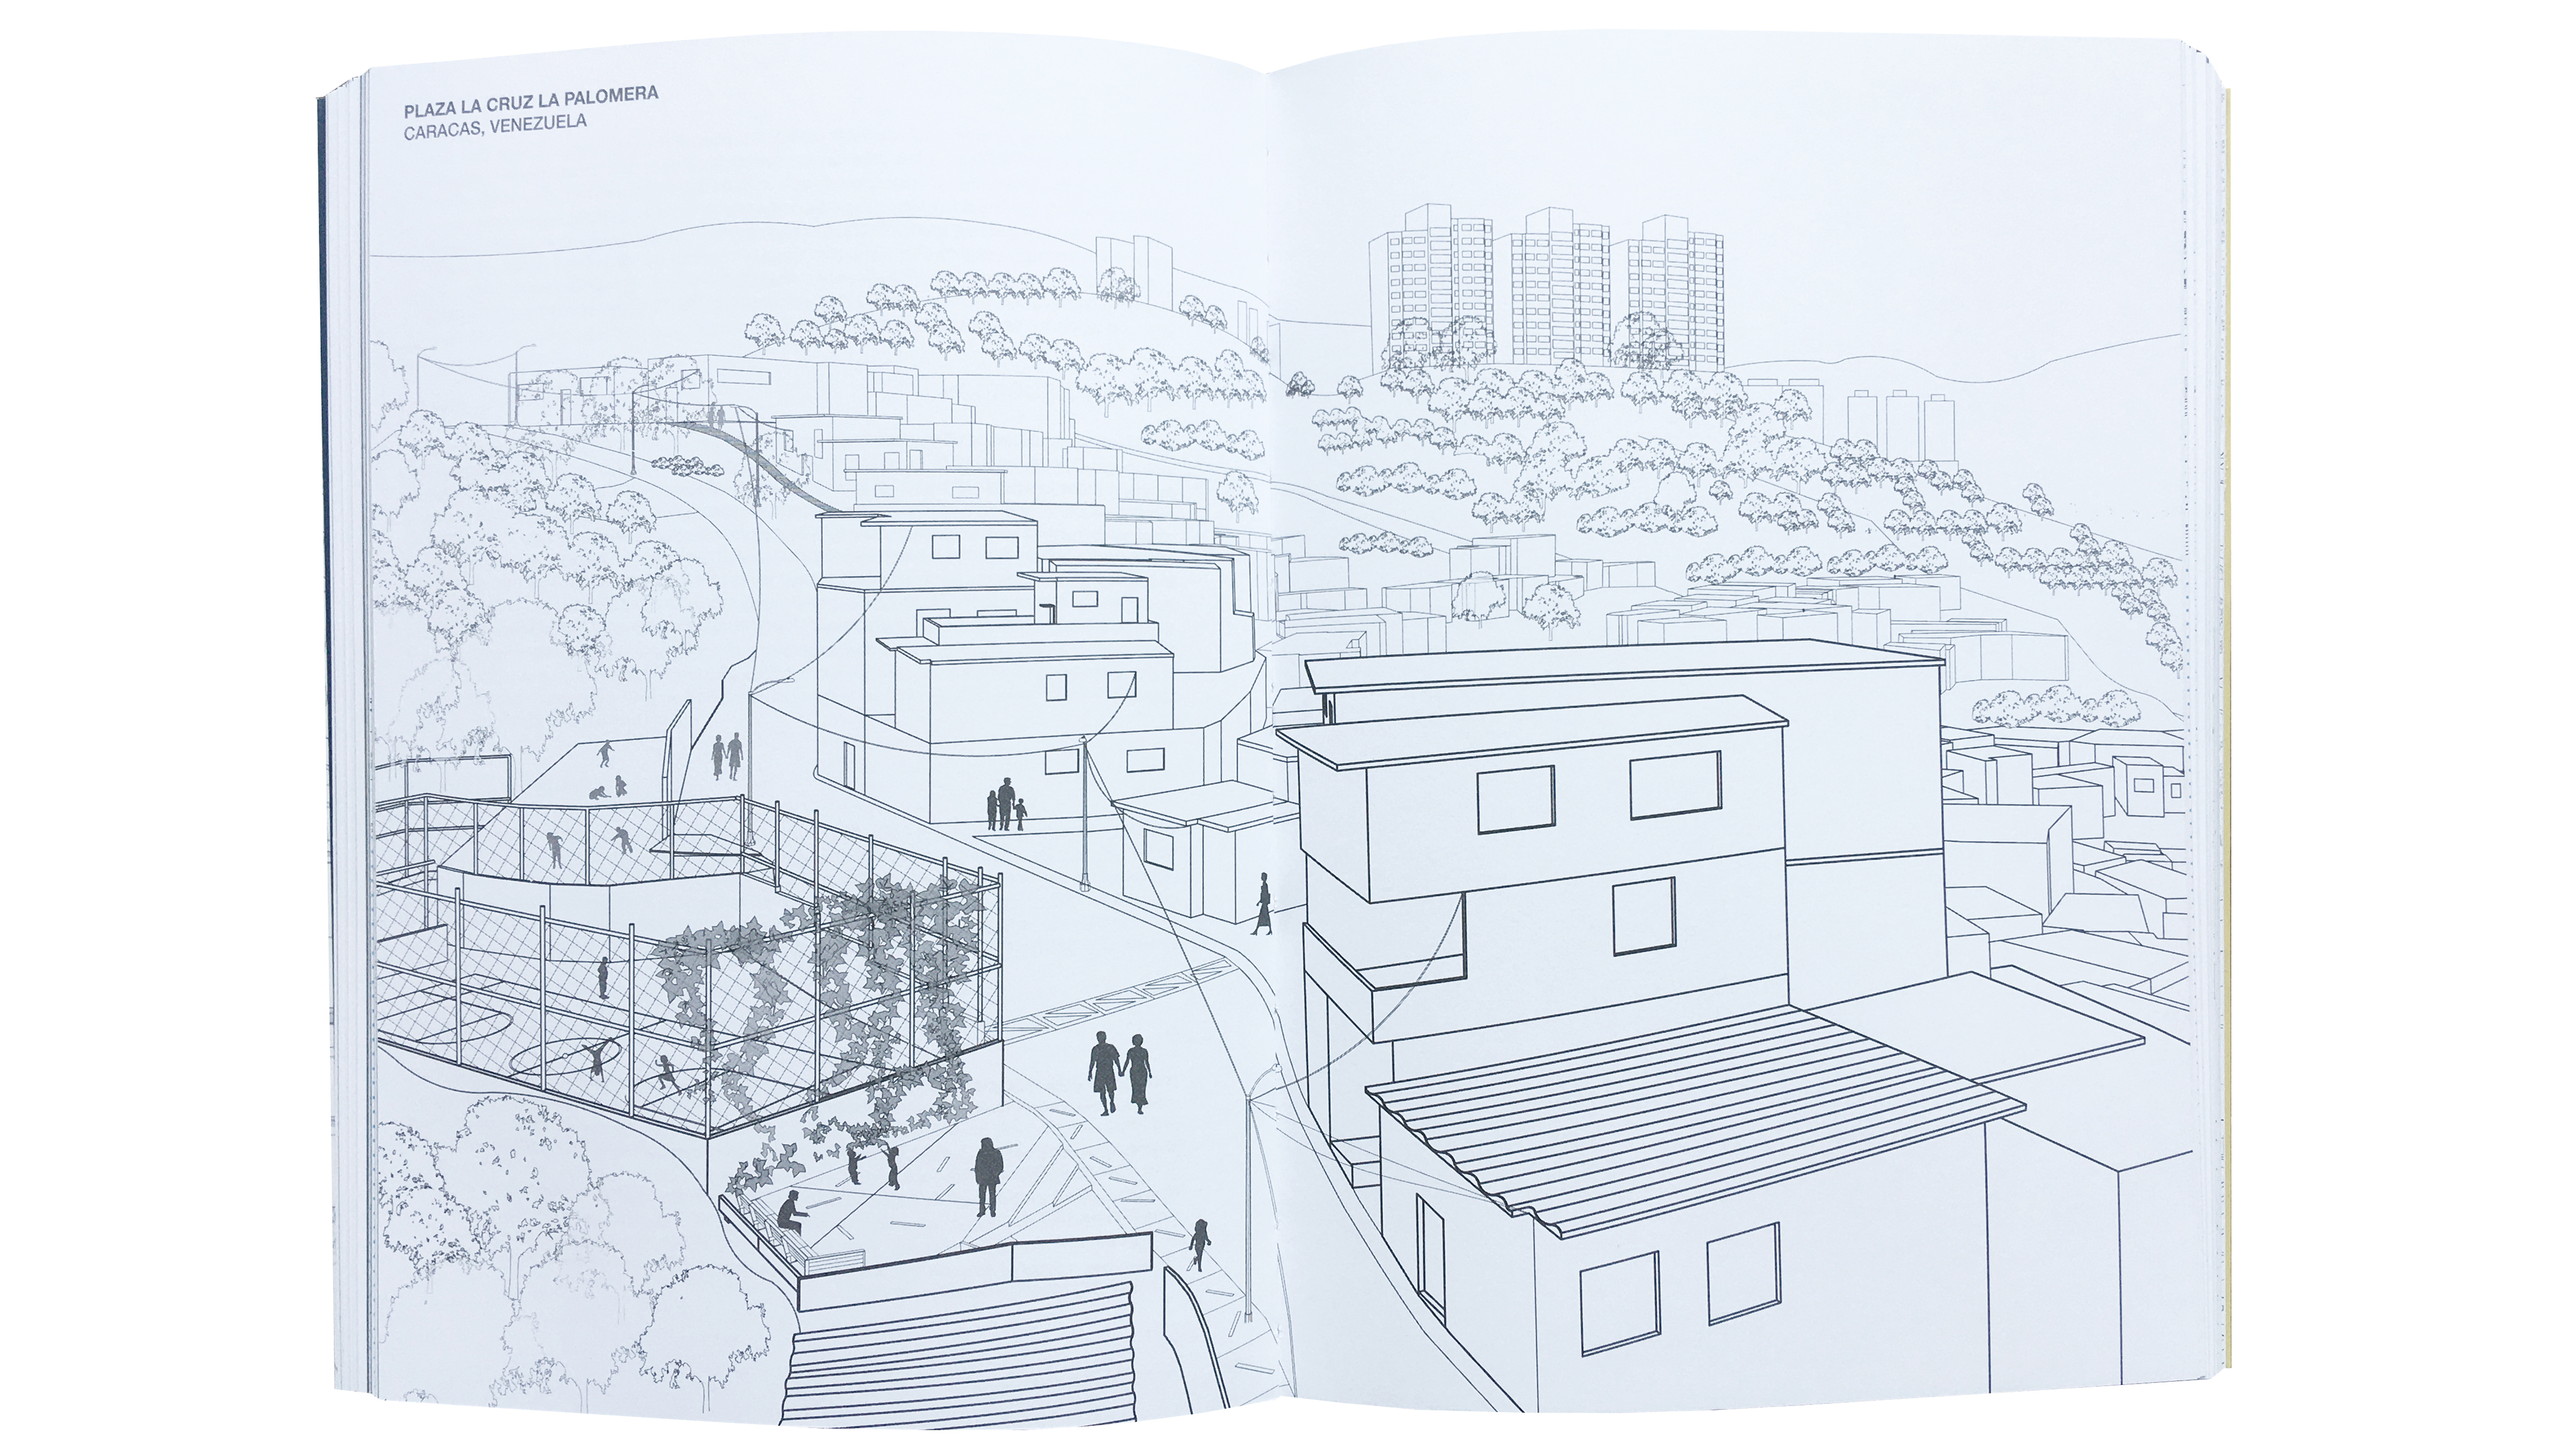 Puro Espacio: Transformaciones de espacio público en asentamientos espontáneos de América Latina